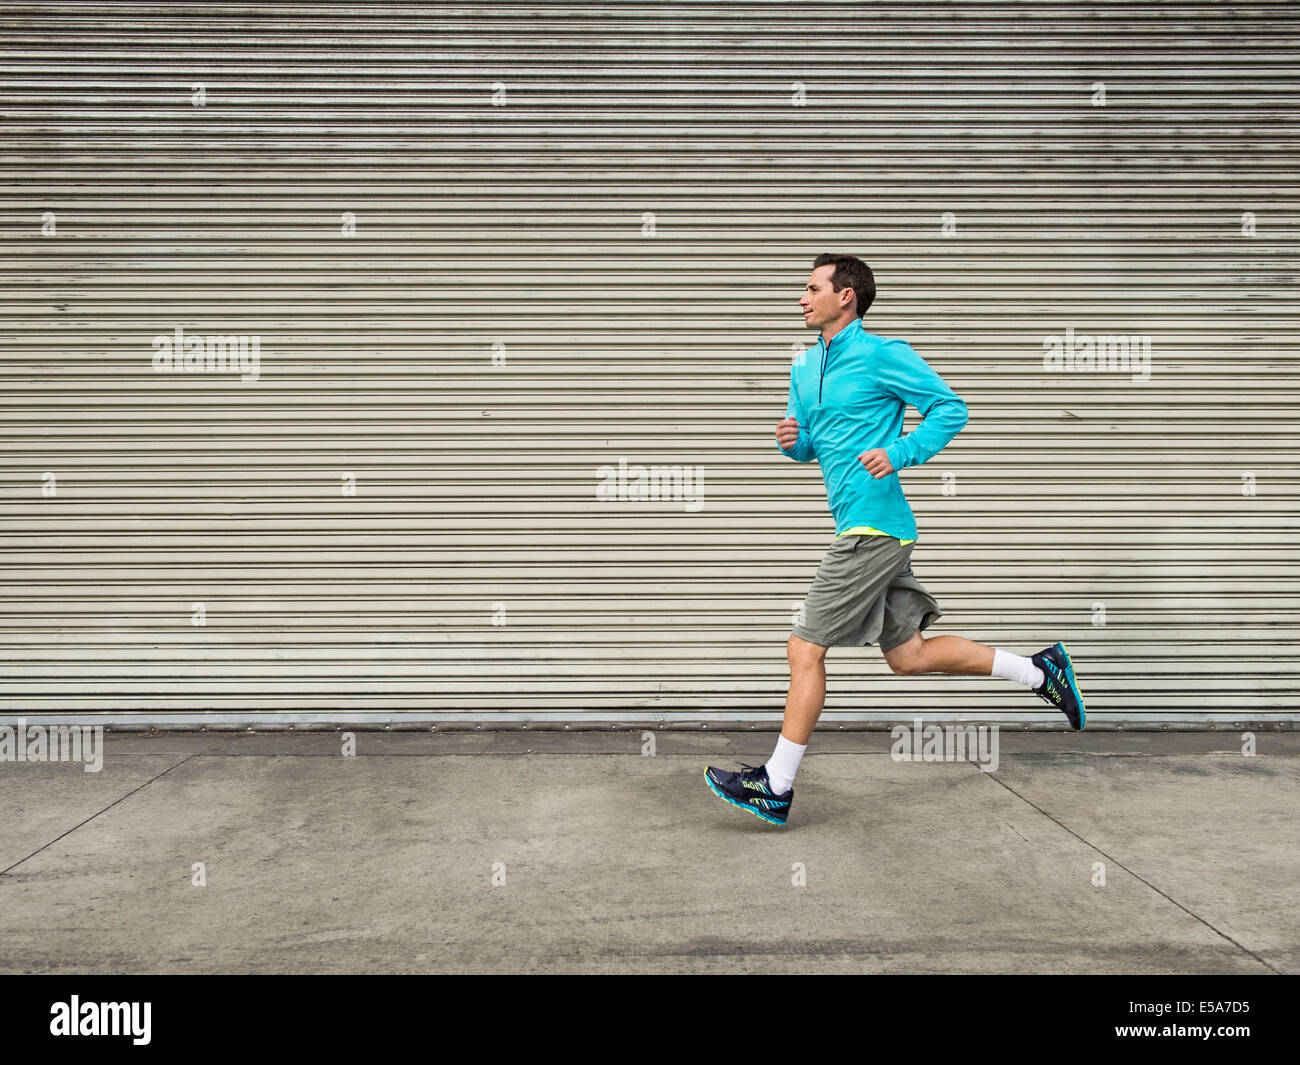 Caucasian man running on city street Stock Photo